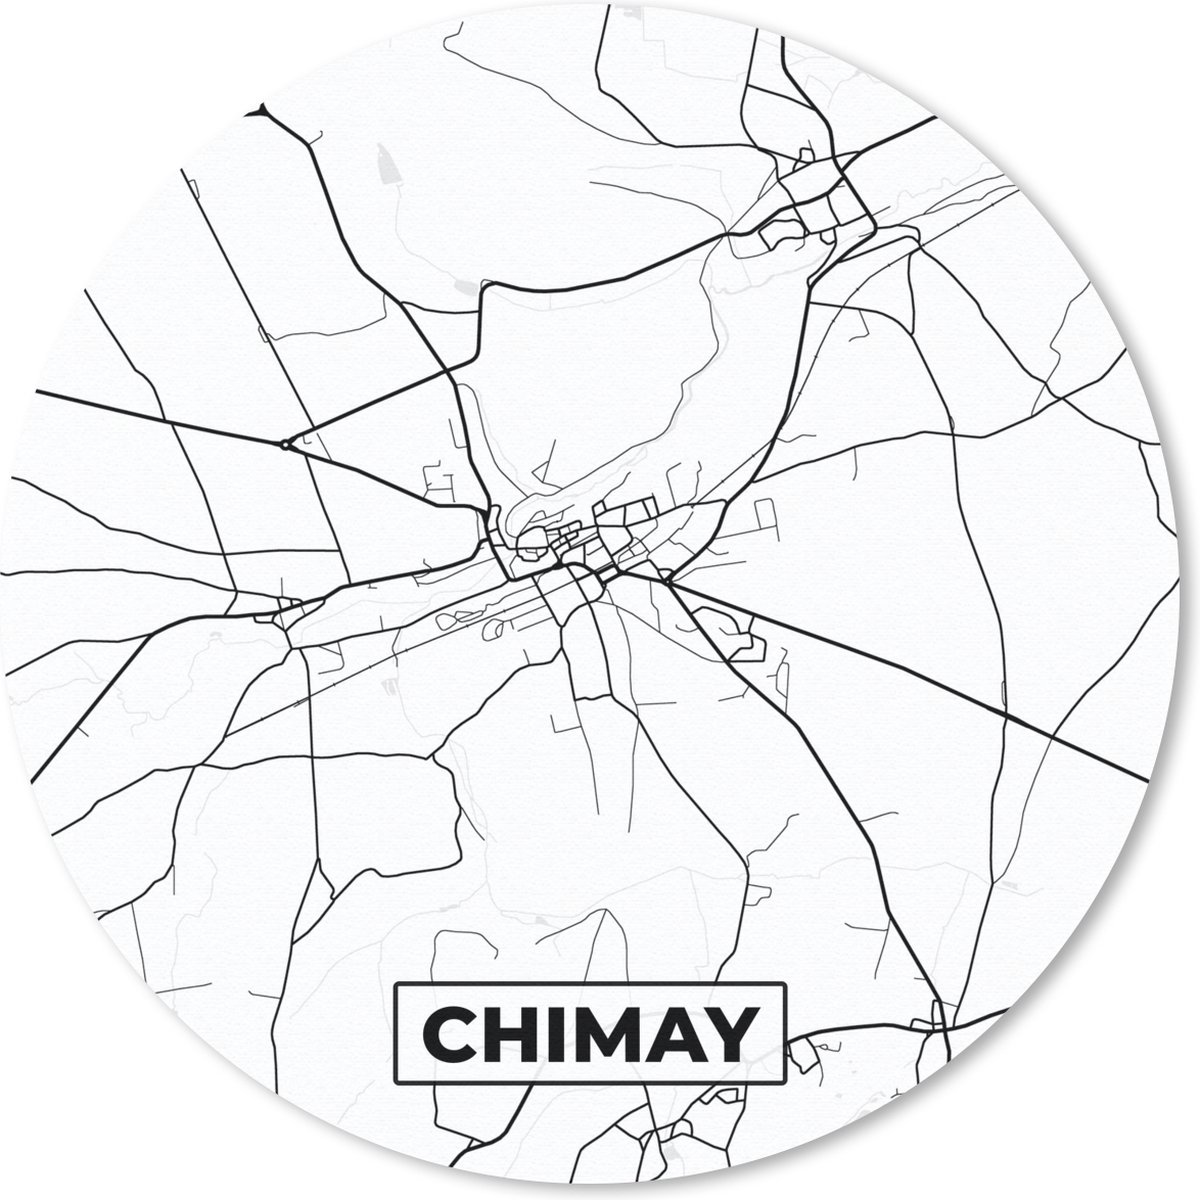 Muismat - Mousepad - Rond - België – Chimay – Stadskaart – Kaart – Zwart Wit – Plattegrond - 50x50 cm - Ronde muismat